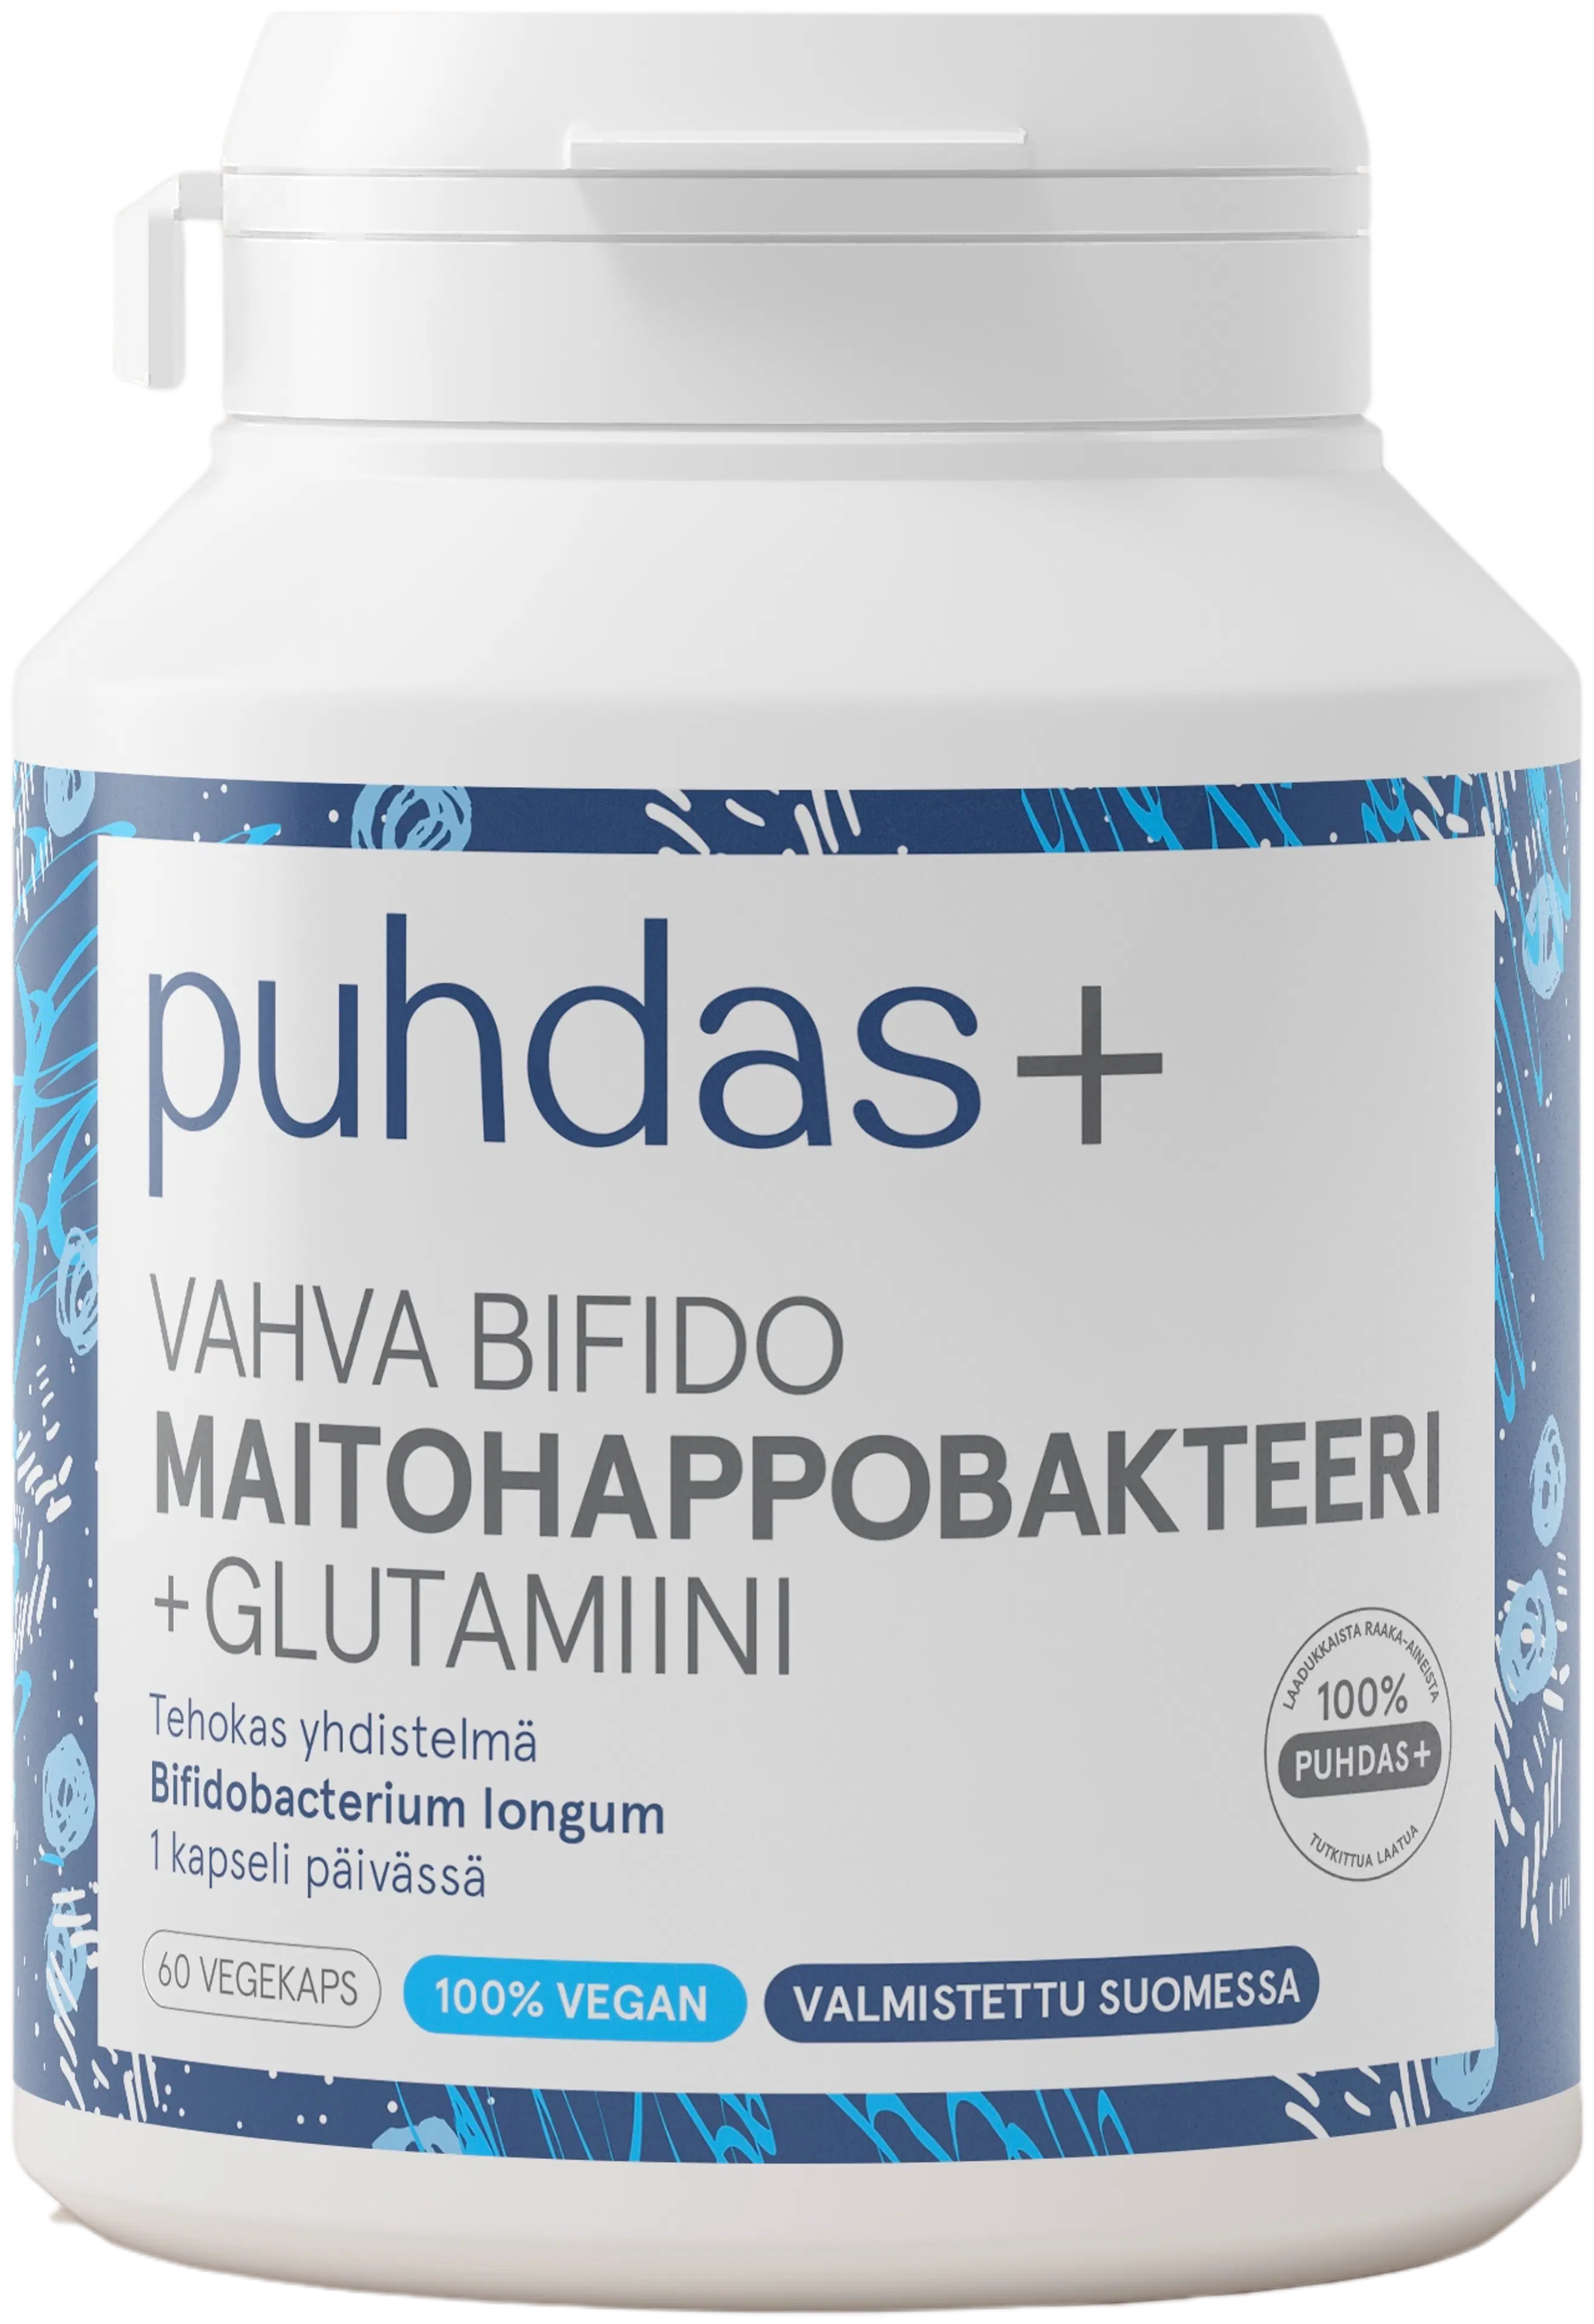 Puhdas+ Vahva Bifido Maitohappobakteeri + glutamiini 60 vegekaps